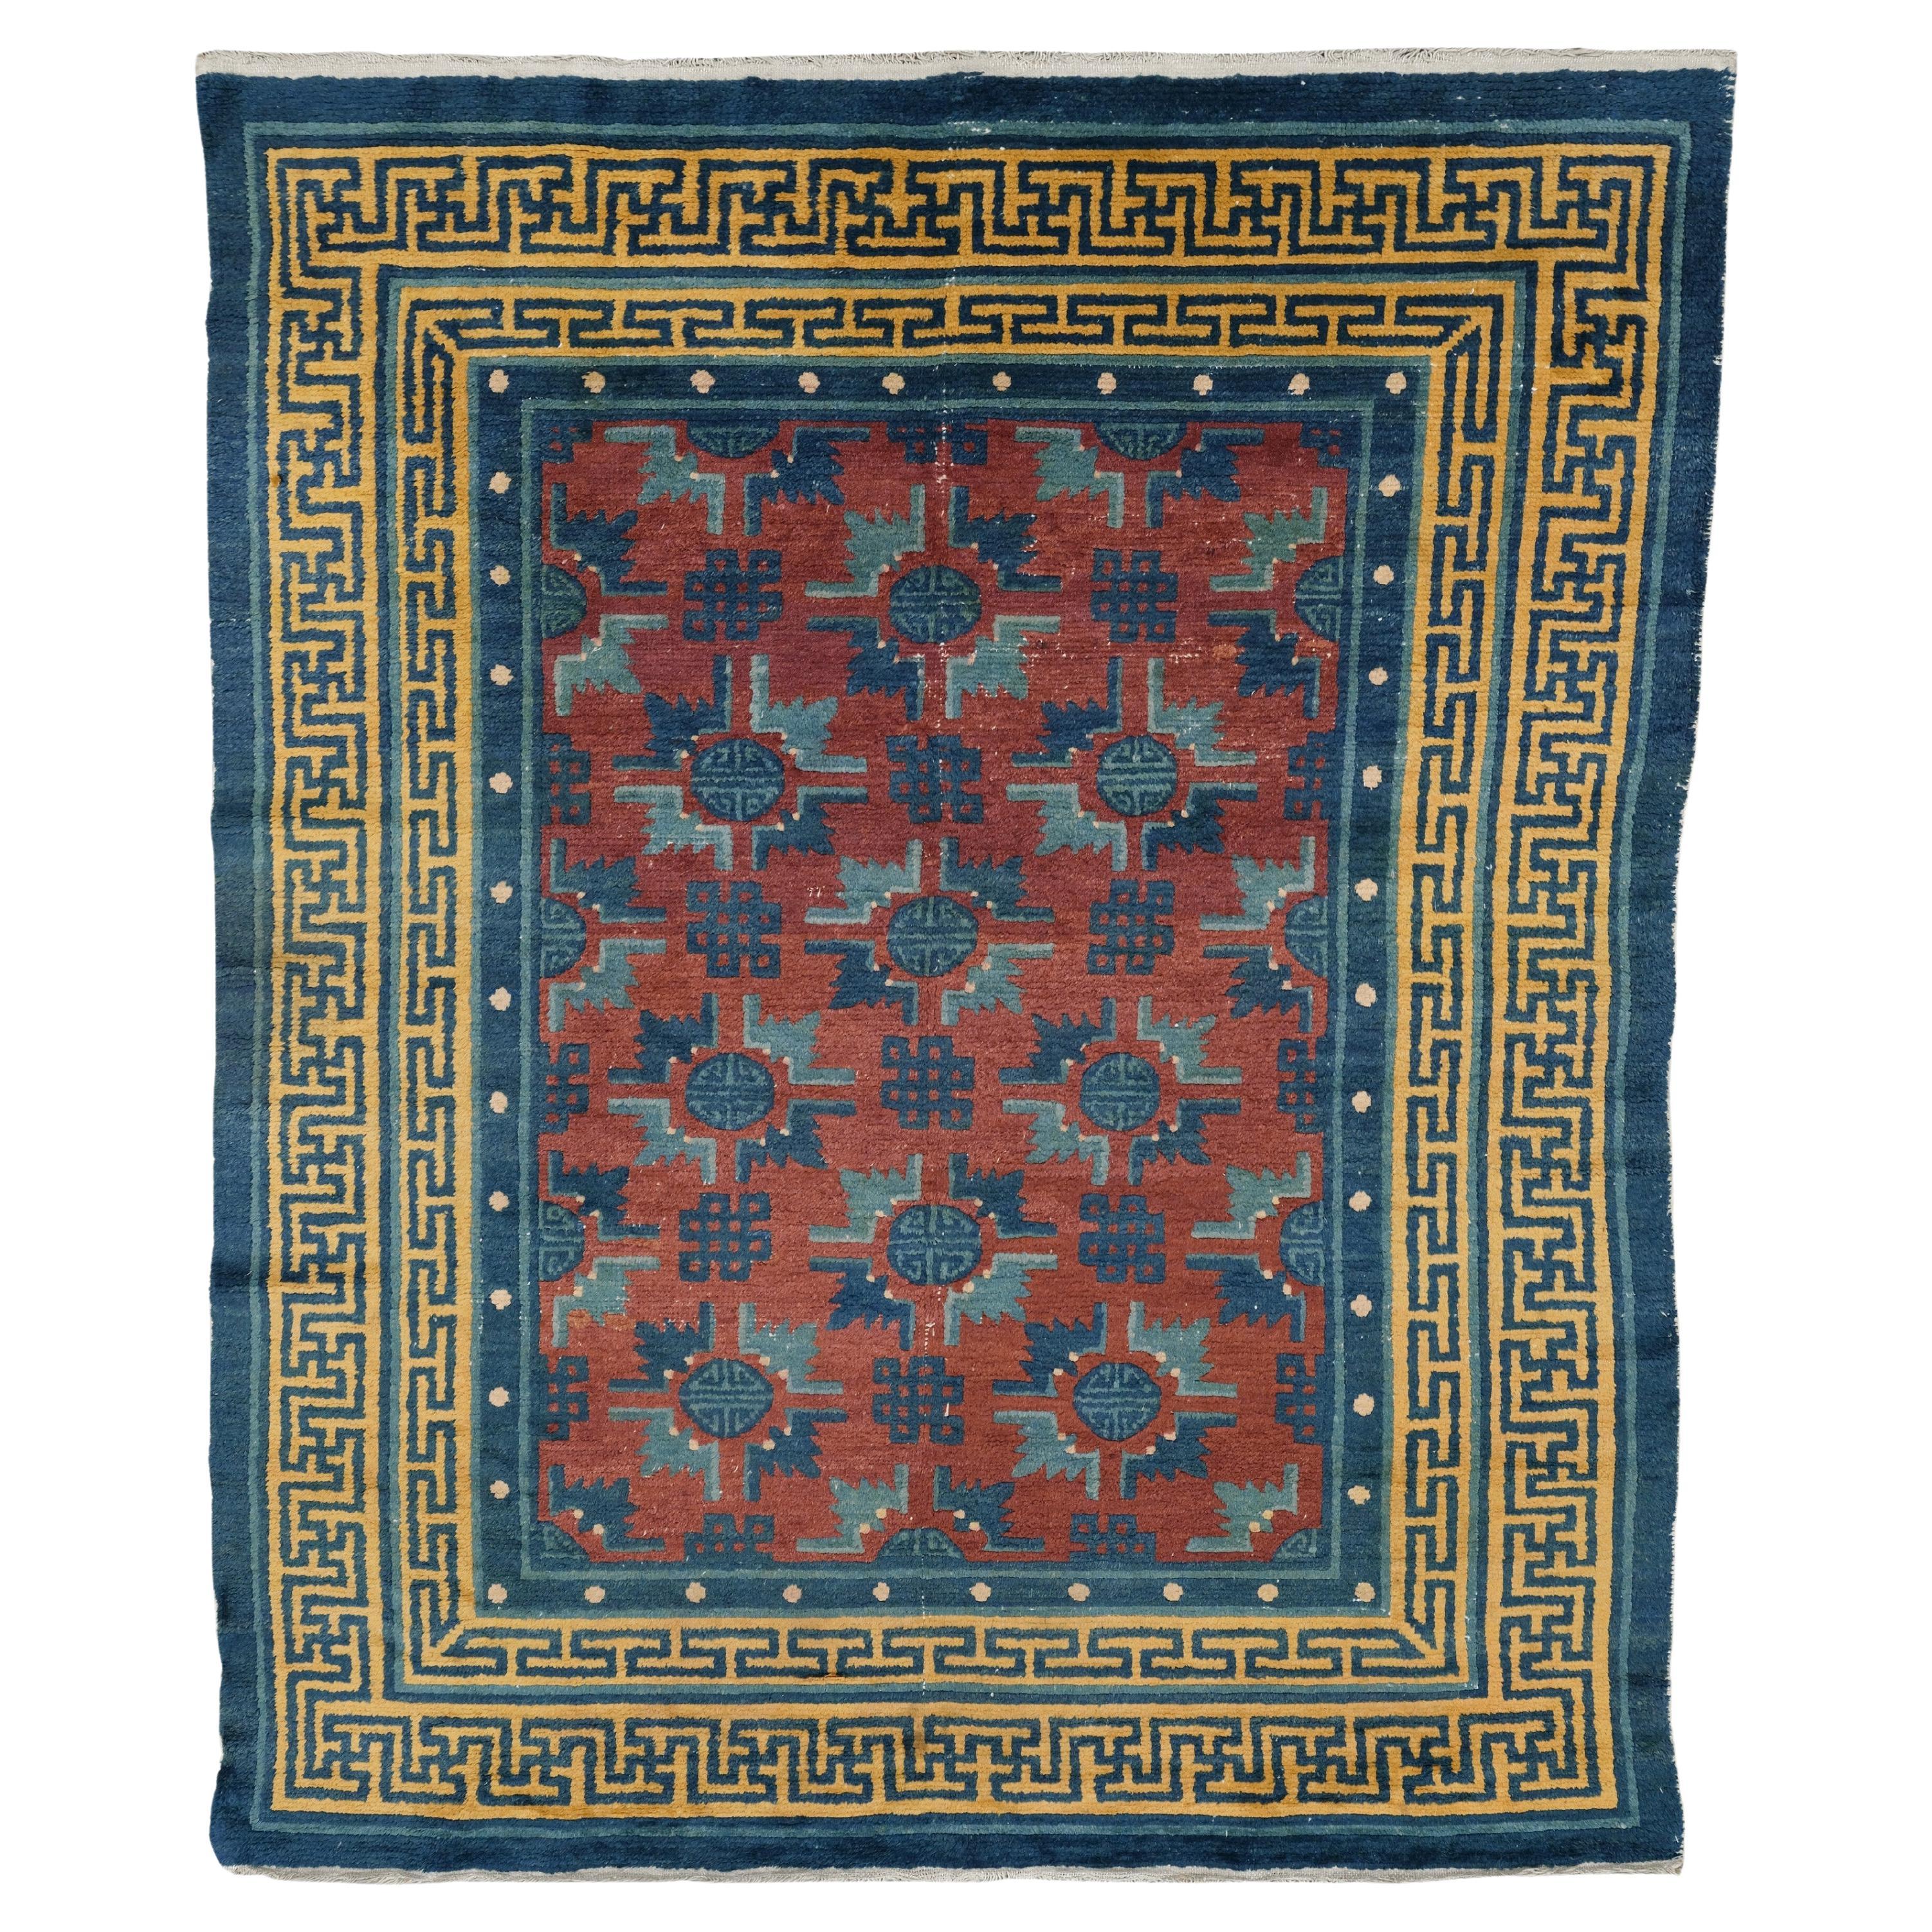 Antiker chinesischer Teppich - 19. Jahrhundert Chinesischer Teppich, Vintage-Teppich, chinesischer Teppich